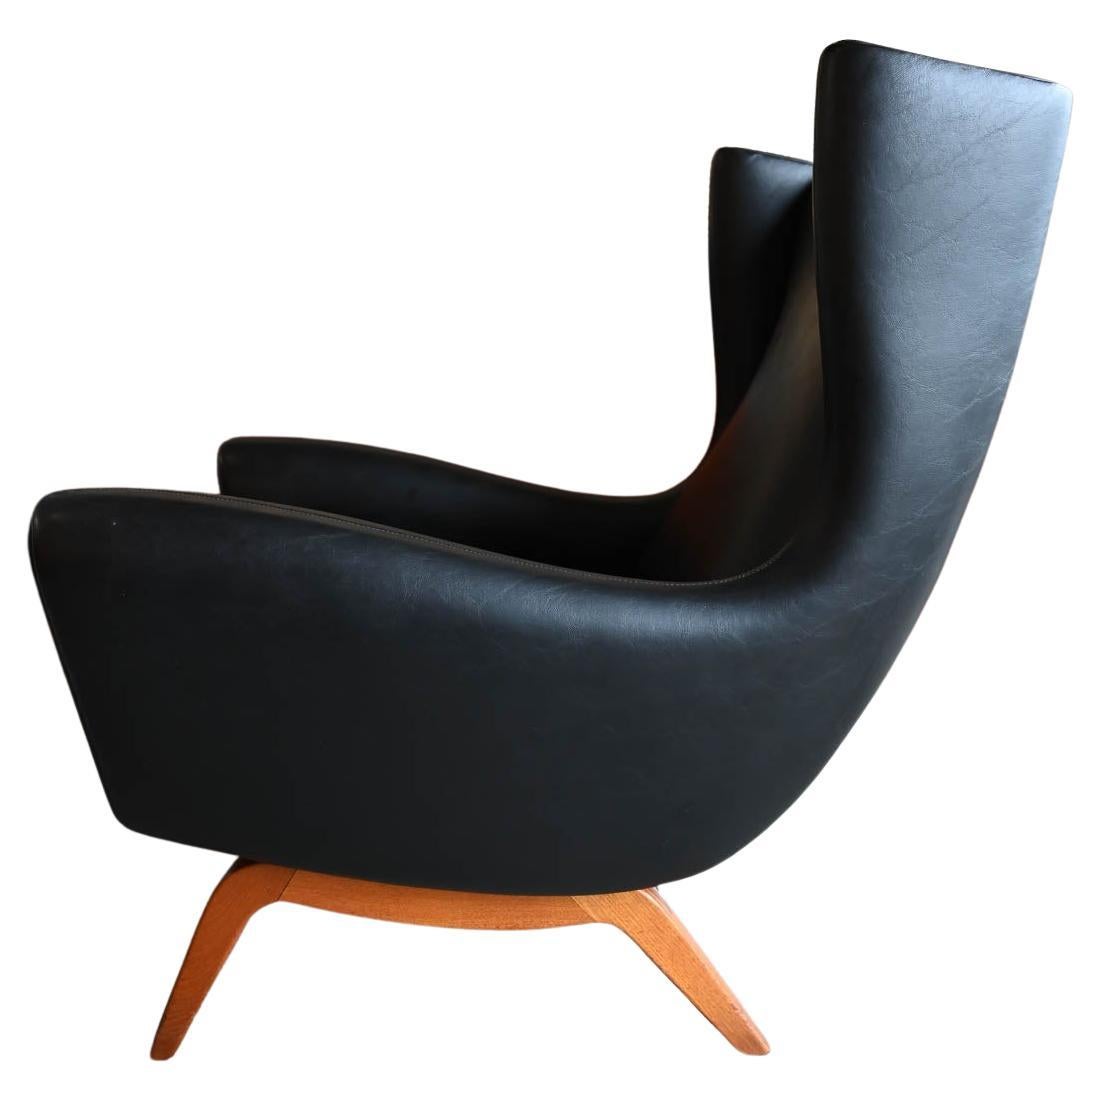 Illum Wikkelso für Soren Willadsen Modell 110 Wingback Lounge Chair, ca. 1955